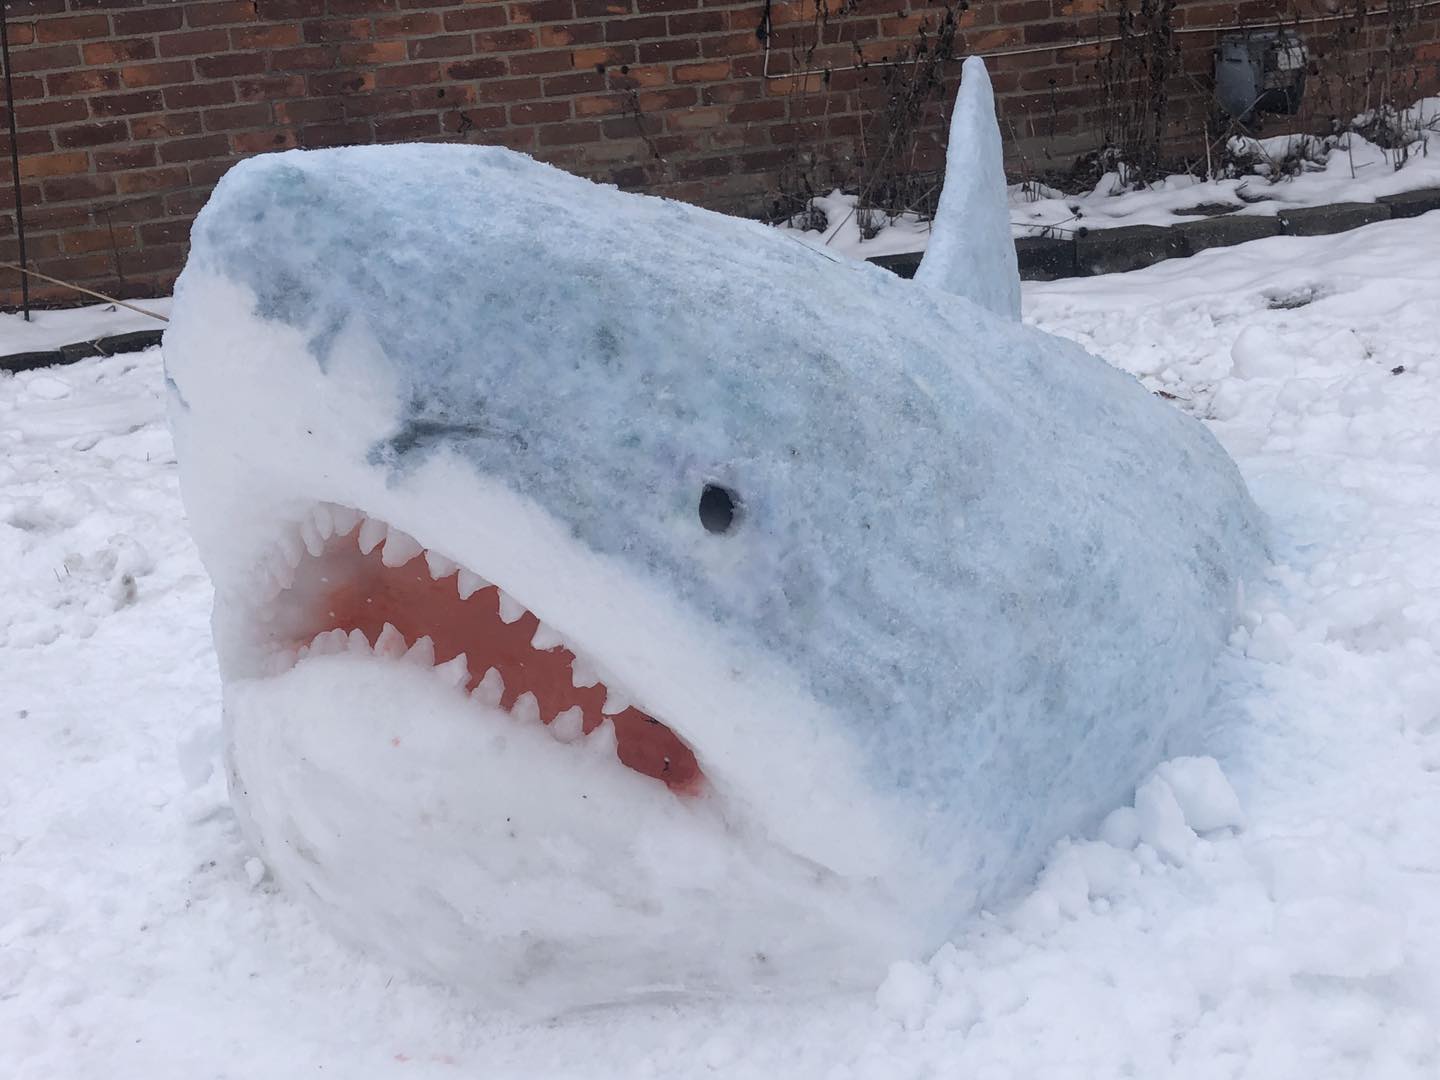 snow sculpture of a shark